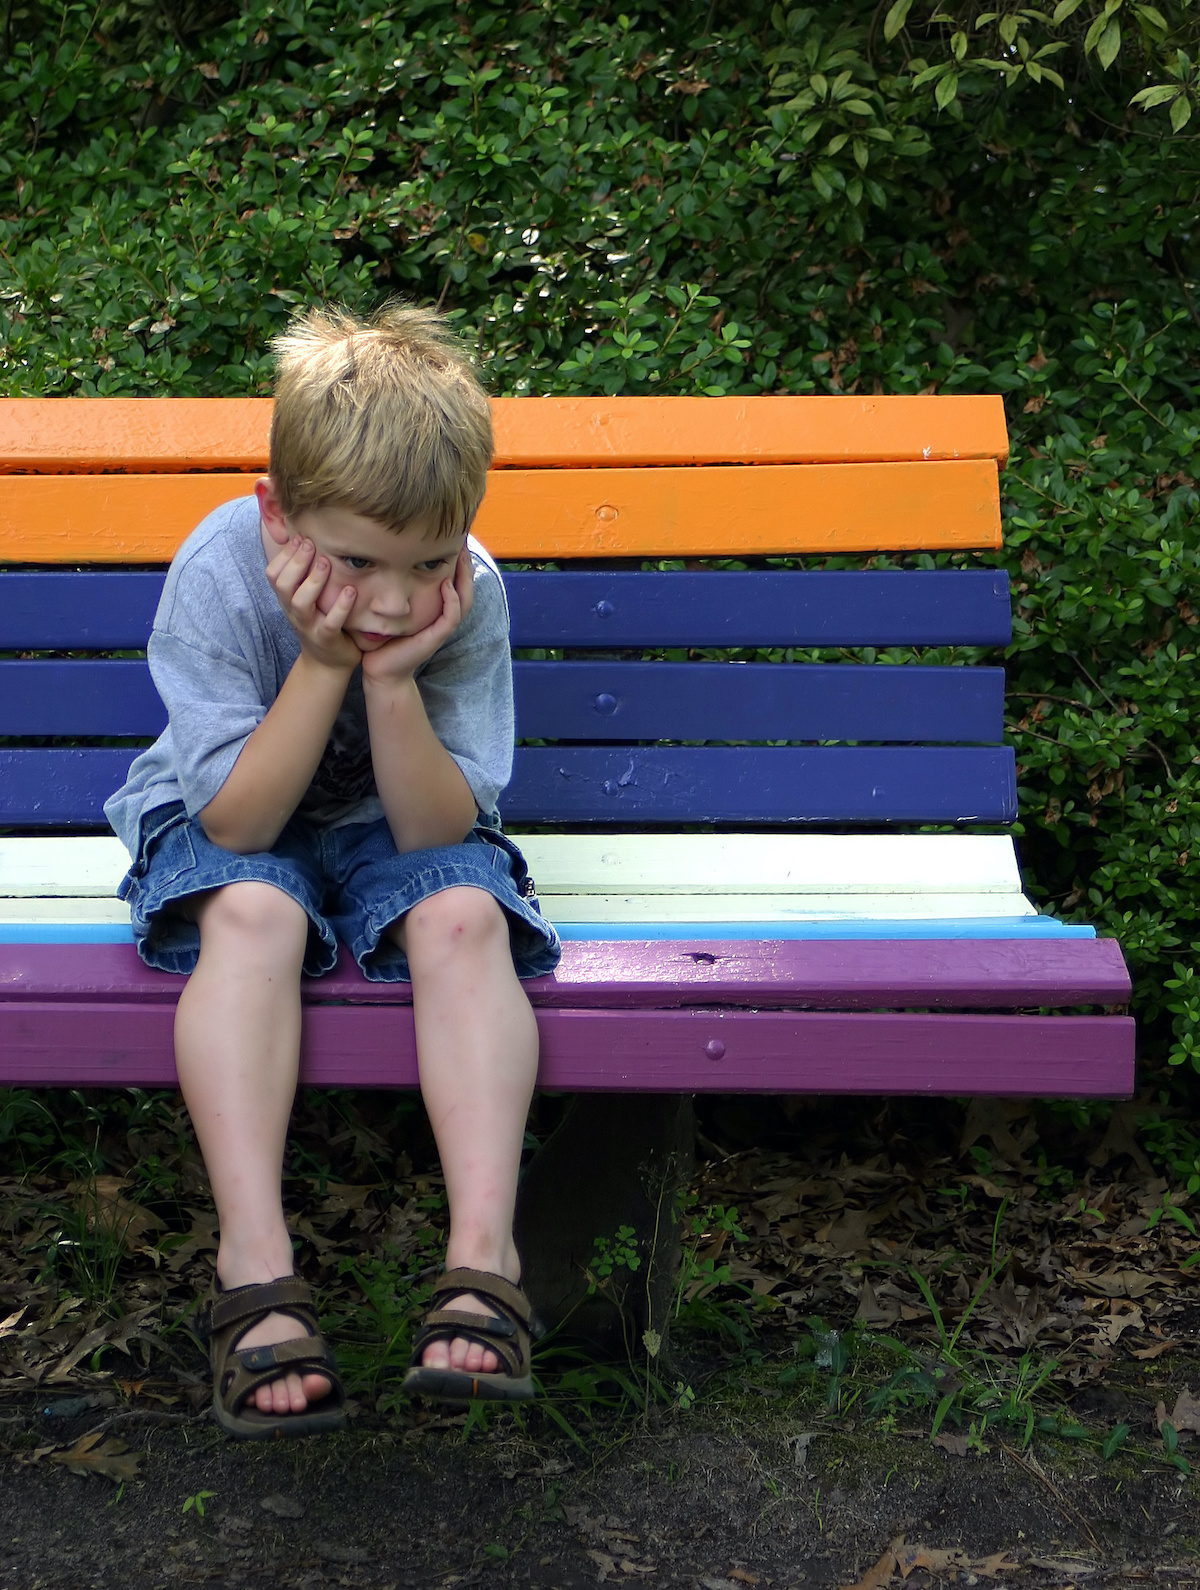 Boy on bench pouting